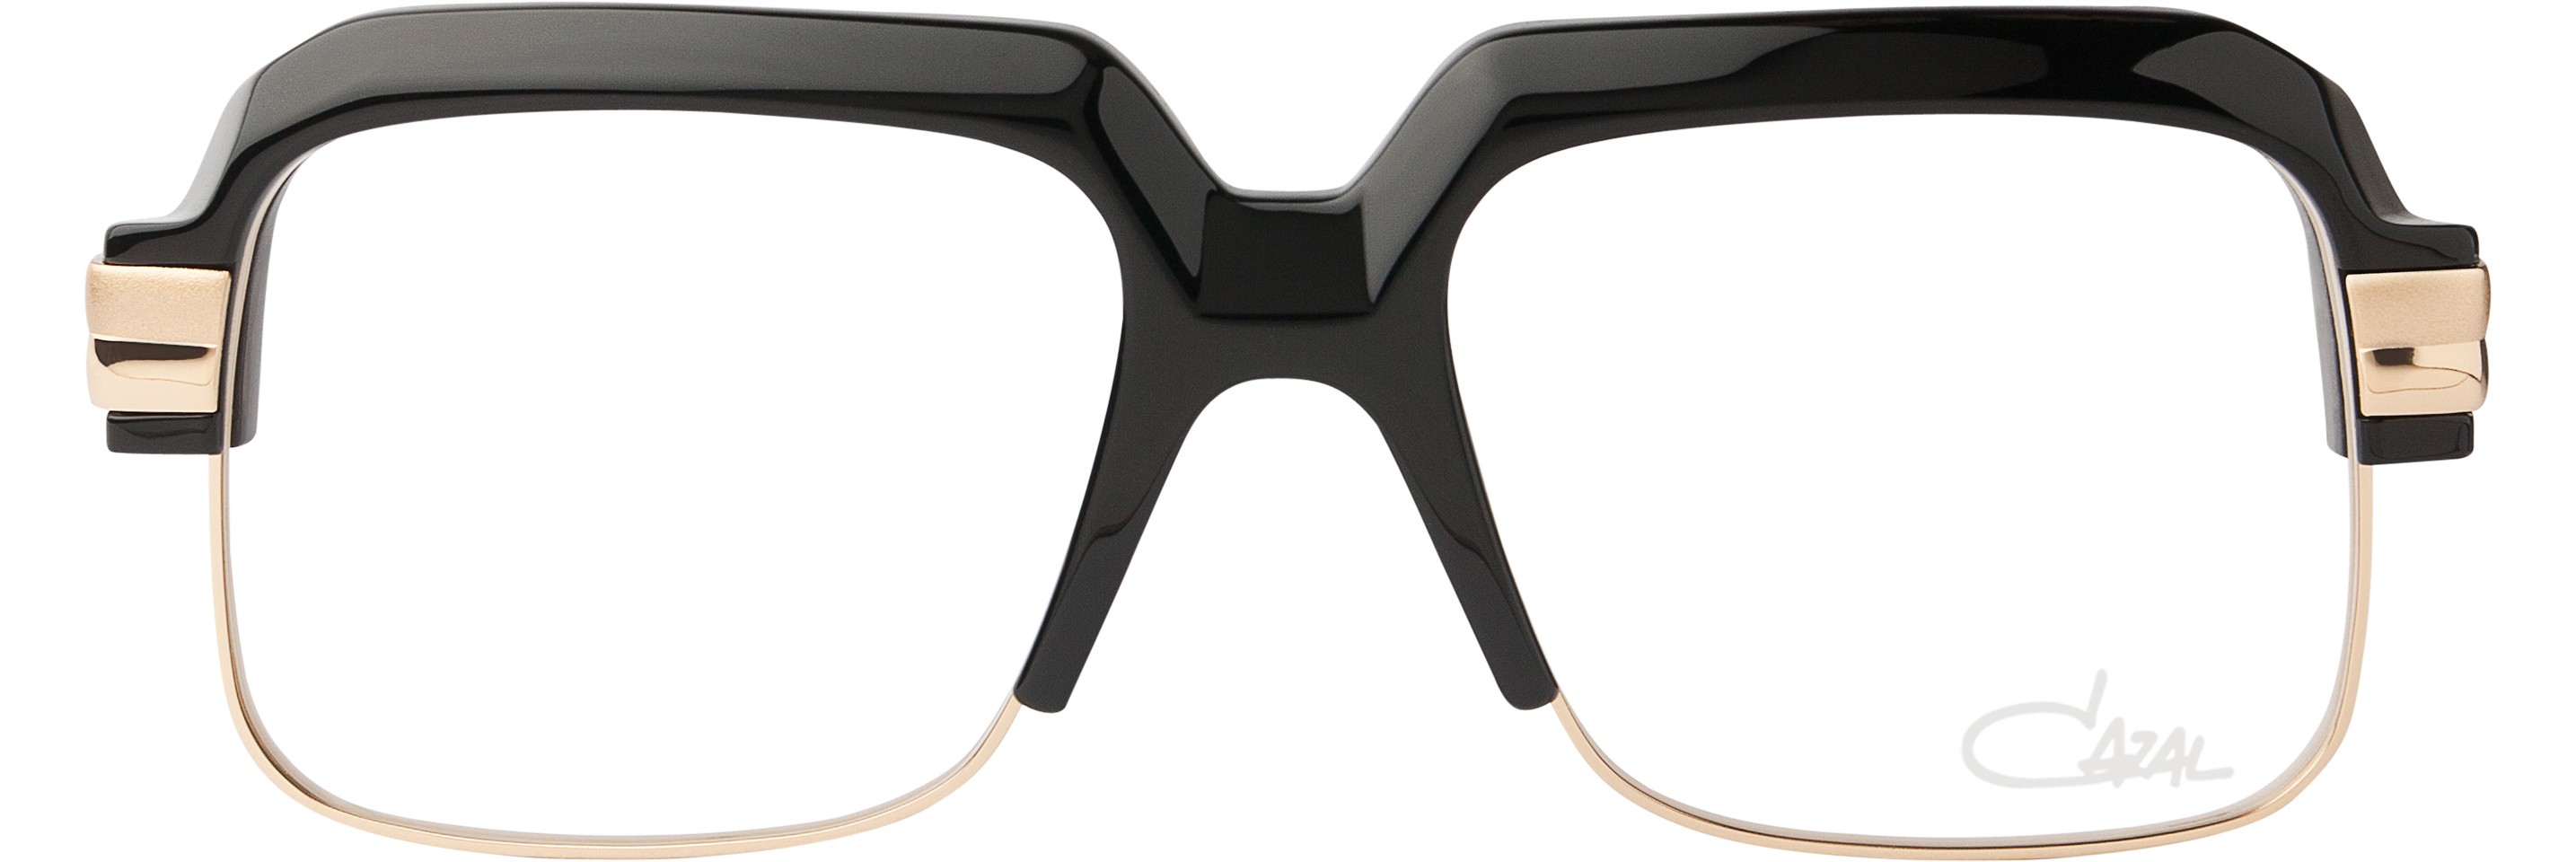 Kính cận Cazal Vintage 670 màu đen: Khám phá sức hút đặc biệt của chiếc kính cận Cazal Vintage 670 màu đen đầy phong cách. Thiết kế đơn giản nhưng không kém phần sang trọng, tạo nên phong cách thời trang tinh tế và khác biệt. Hình ảnh chi tiết sẽ khiến bạn ngất ngây và muốn sắm ngay một chiếc để thể hiện cá tính của mình. 